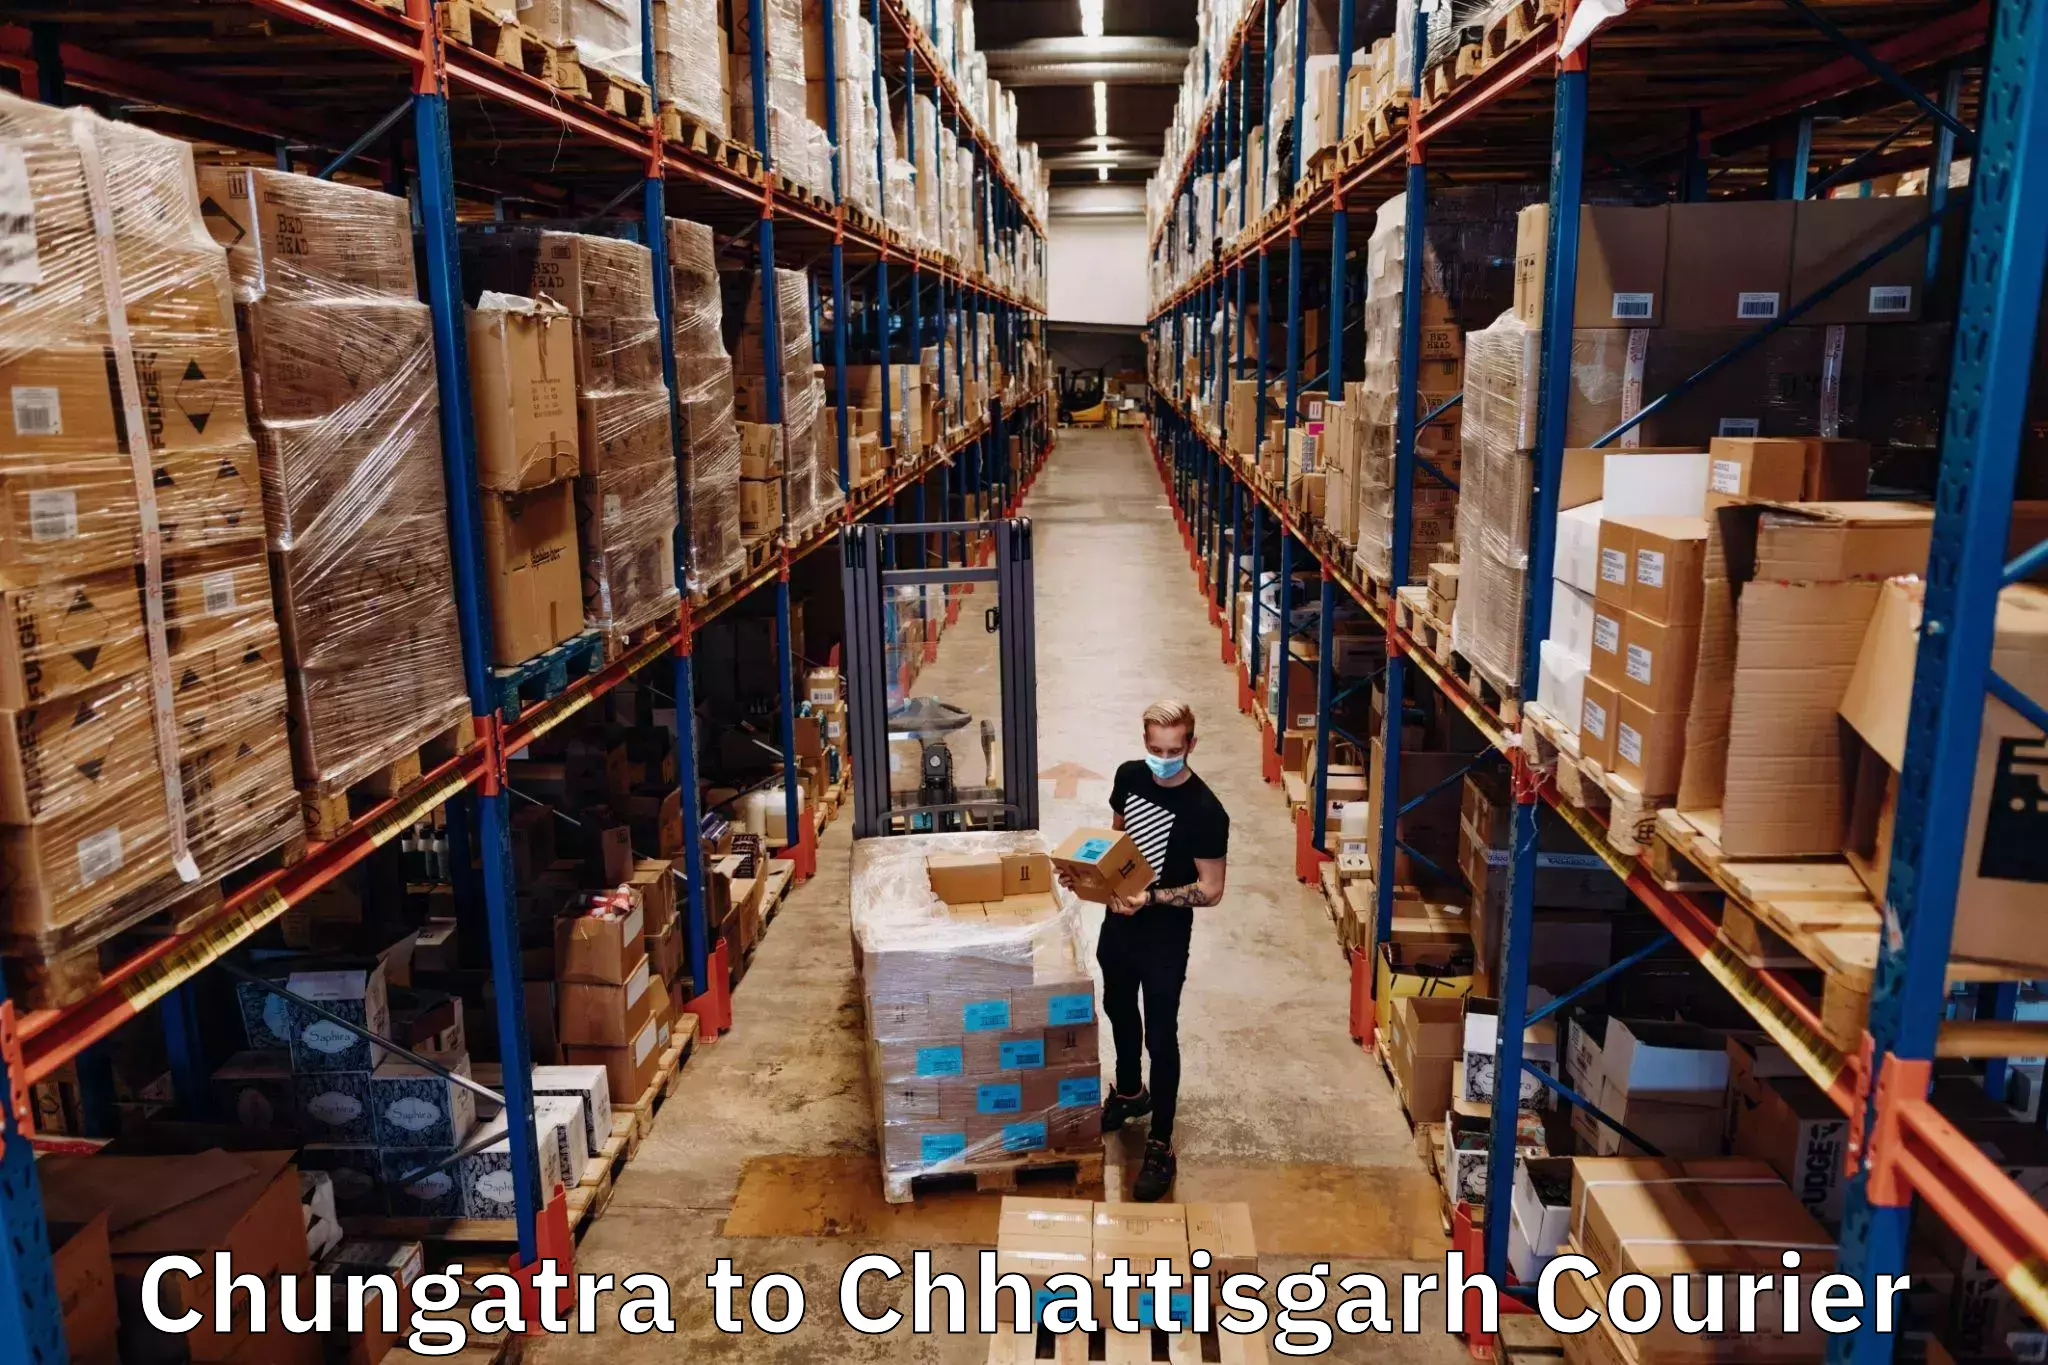 Domestic courier Chungatra to Chhattisgarh